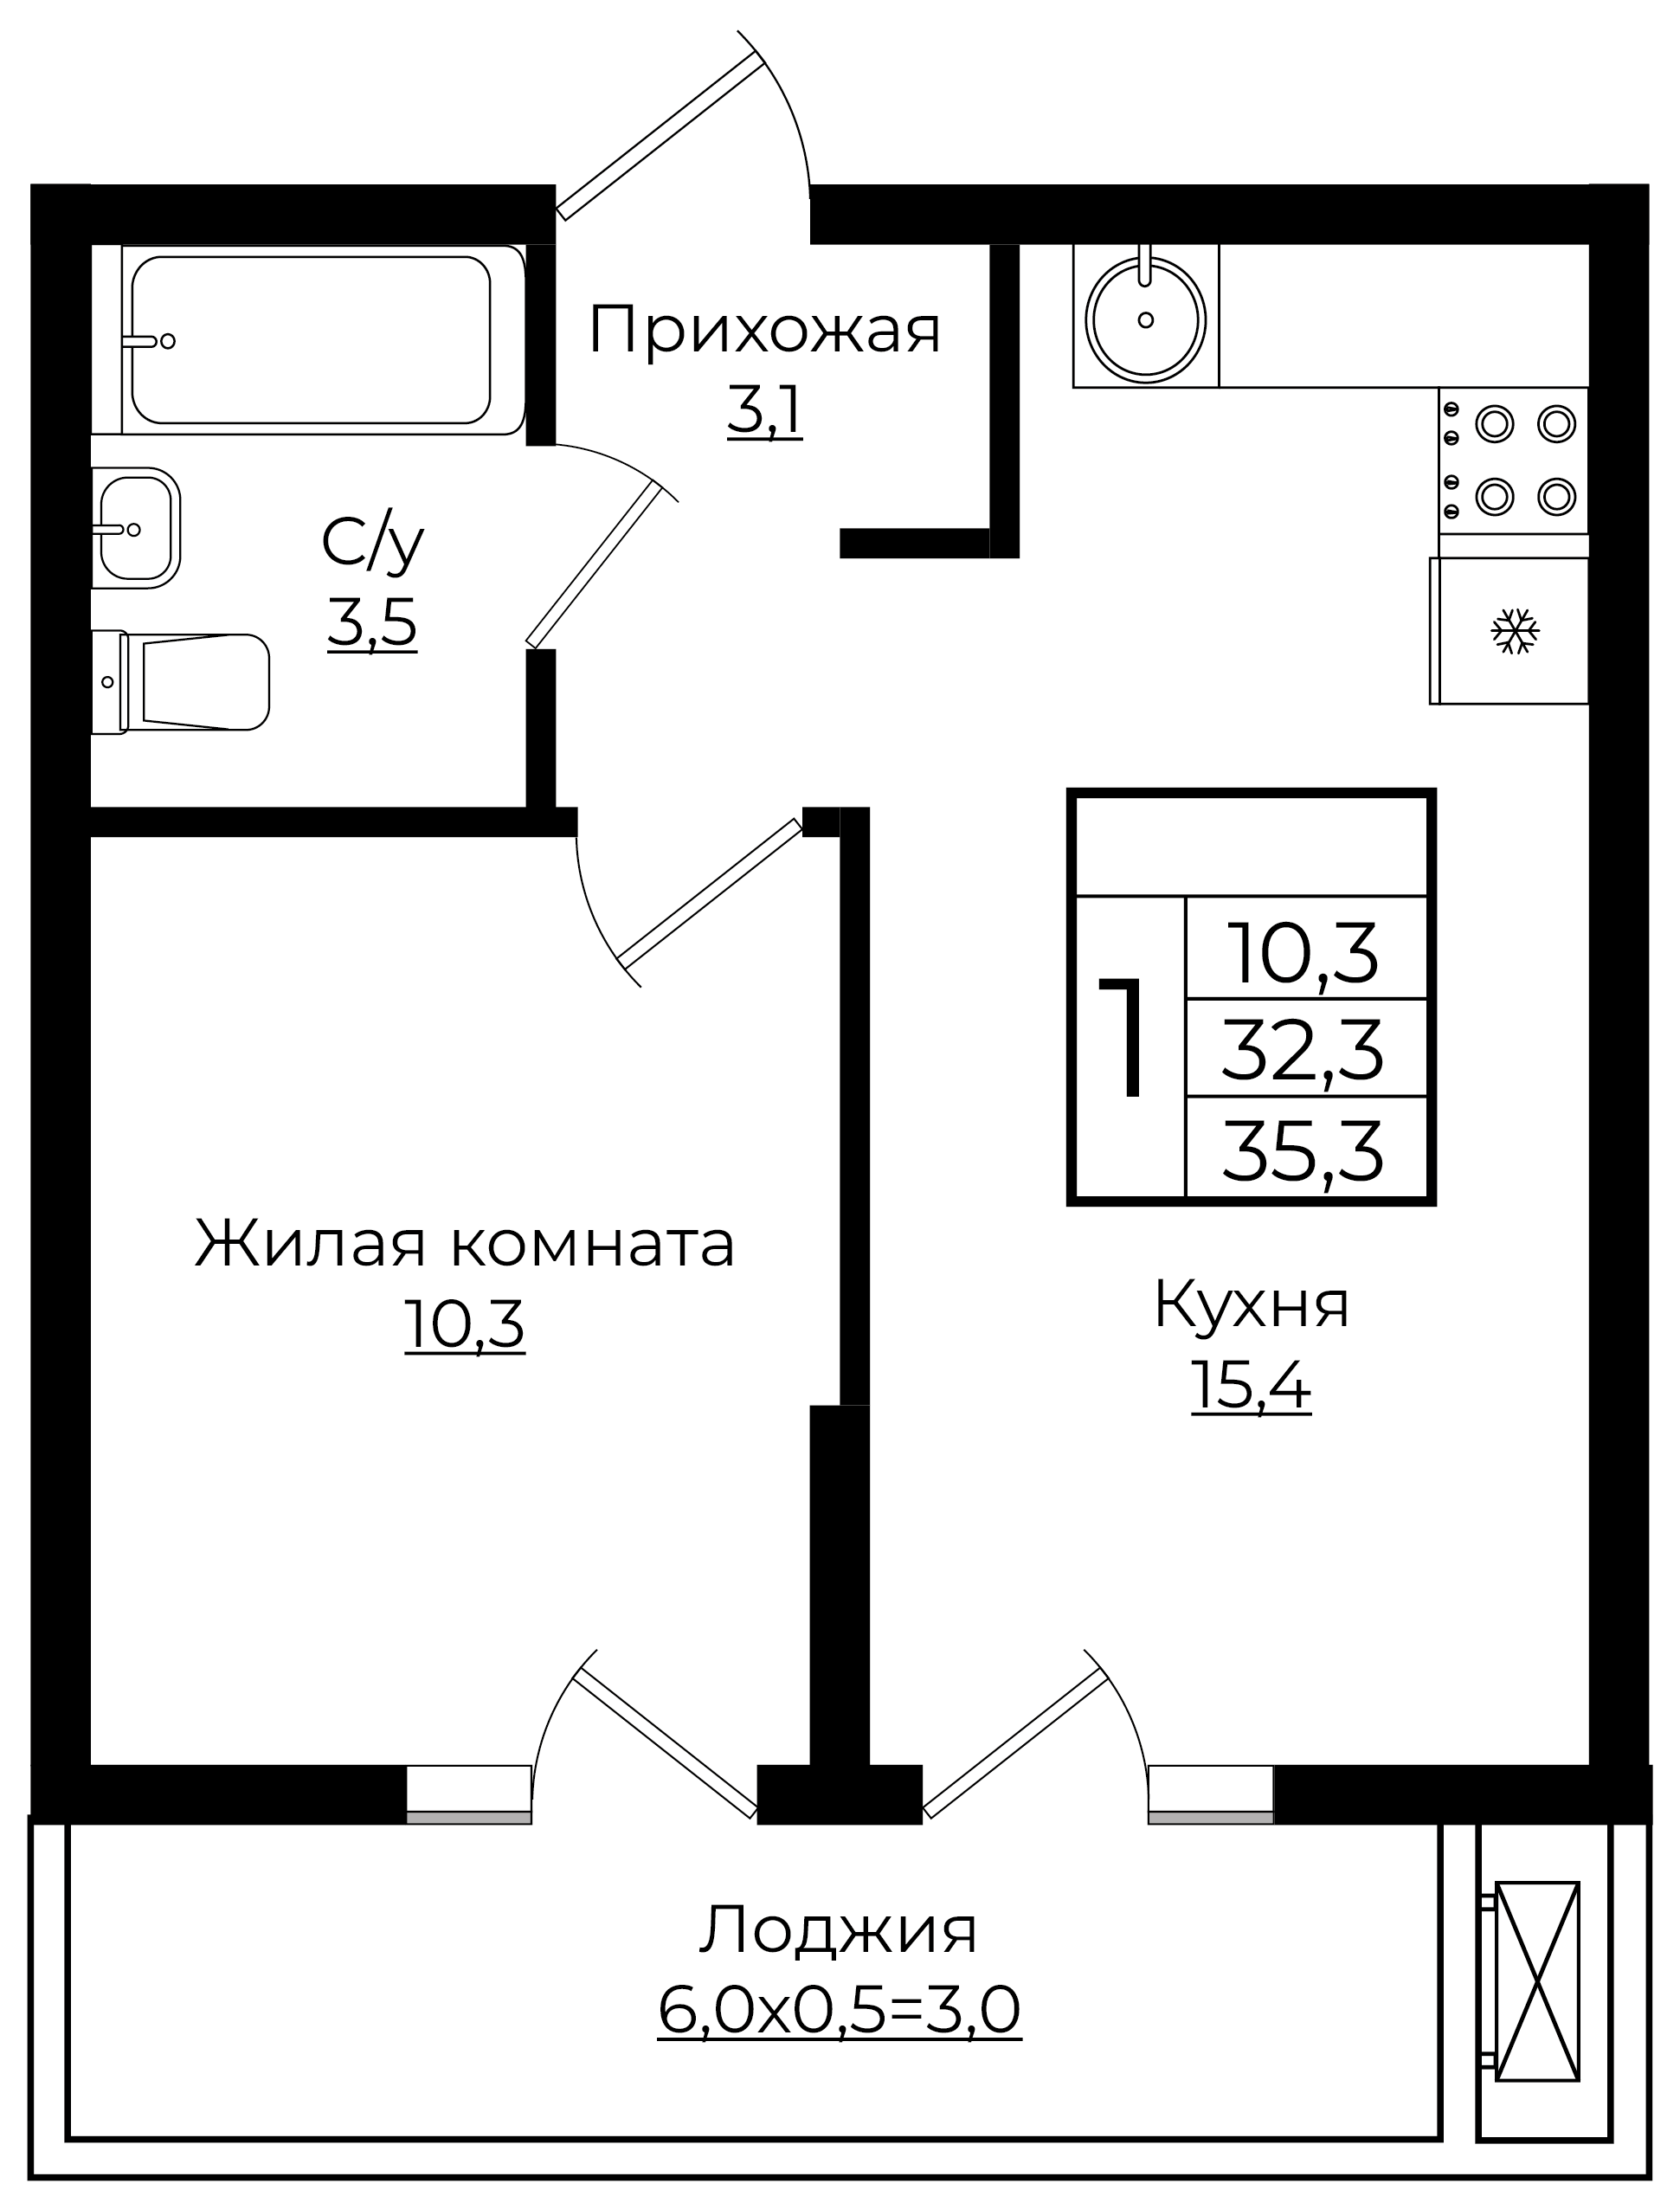 1-комнатная 35.3 м2